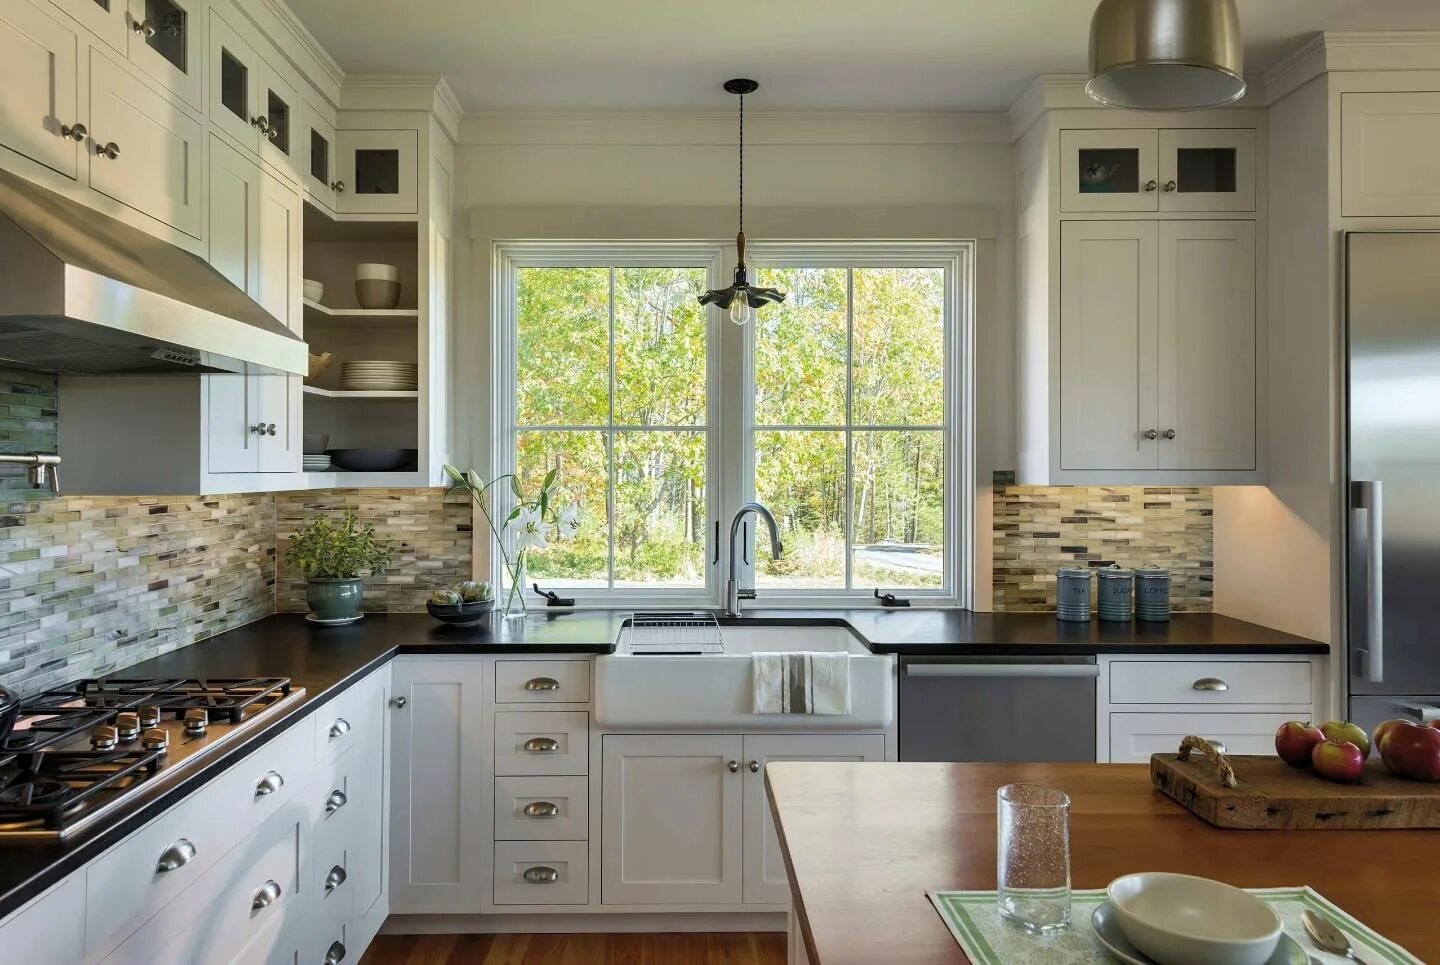 Кухни примыкающие к окну. Кухня с мойкой у окна. Кухня в доме с окном. Угловая кухня с мойкой у окна. Раковина у окна на кухне.